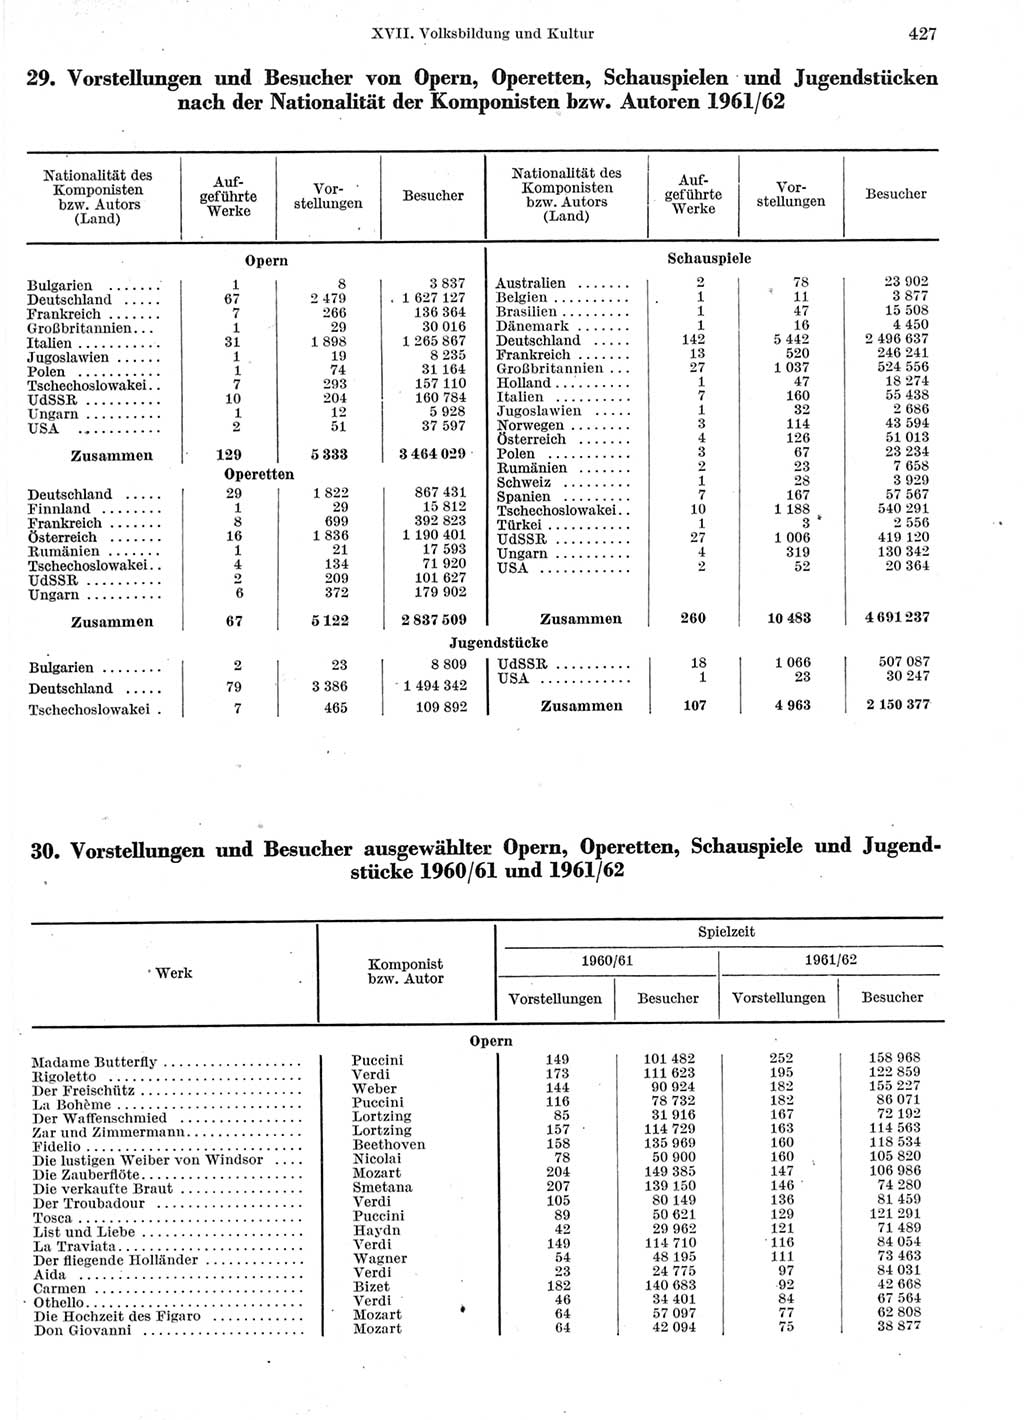 Statistisches Jahrbuch der Deutschen Demokratischen Republik (DDR) 1963, Seite 427 (Stat. Jb. DDR 1963, S. 427)